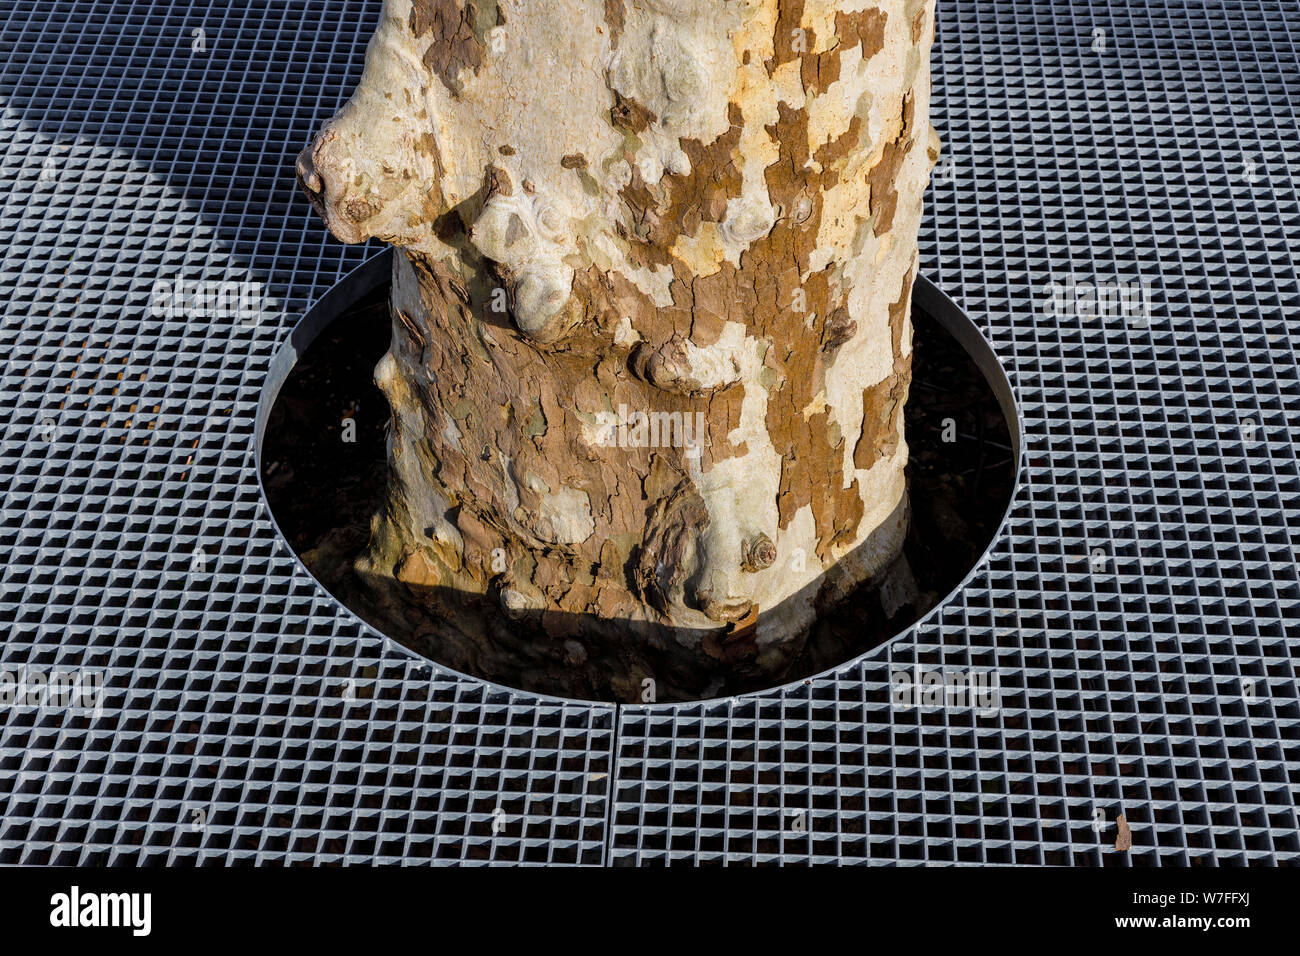 A Londra Platano, Platanus x hispanica, con un rilievo griglia protettiva sopra di esso le radici e la corteccia chiazze che è tipico di questa specie. Foto Stock